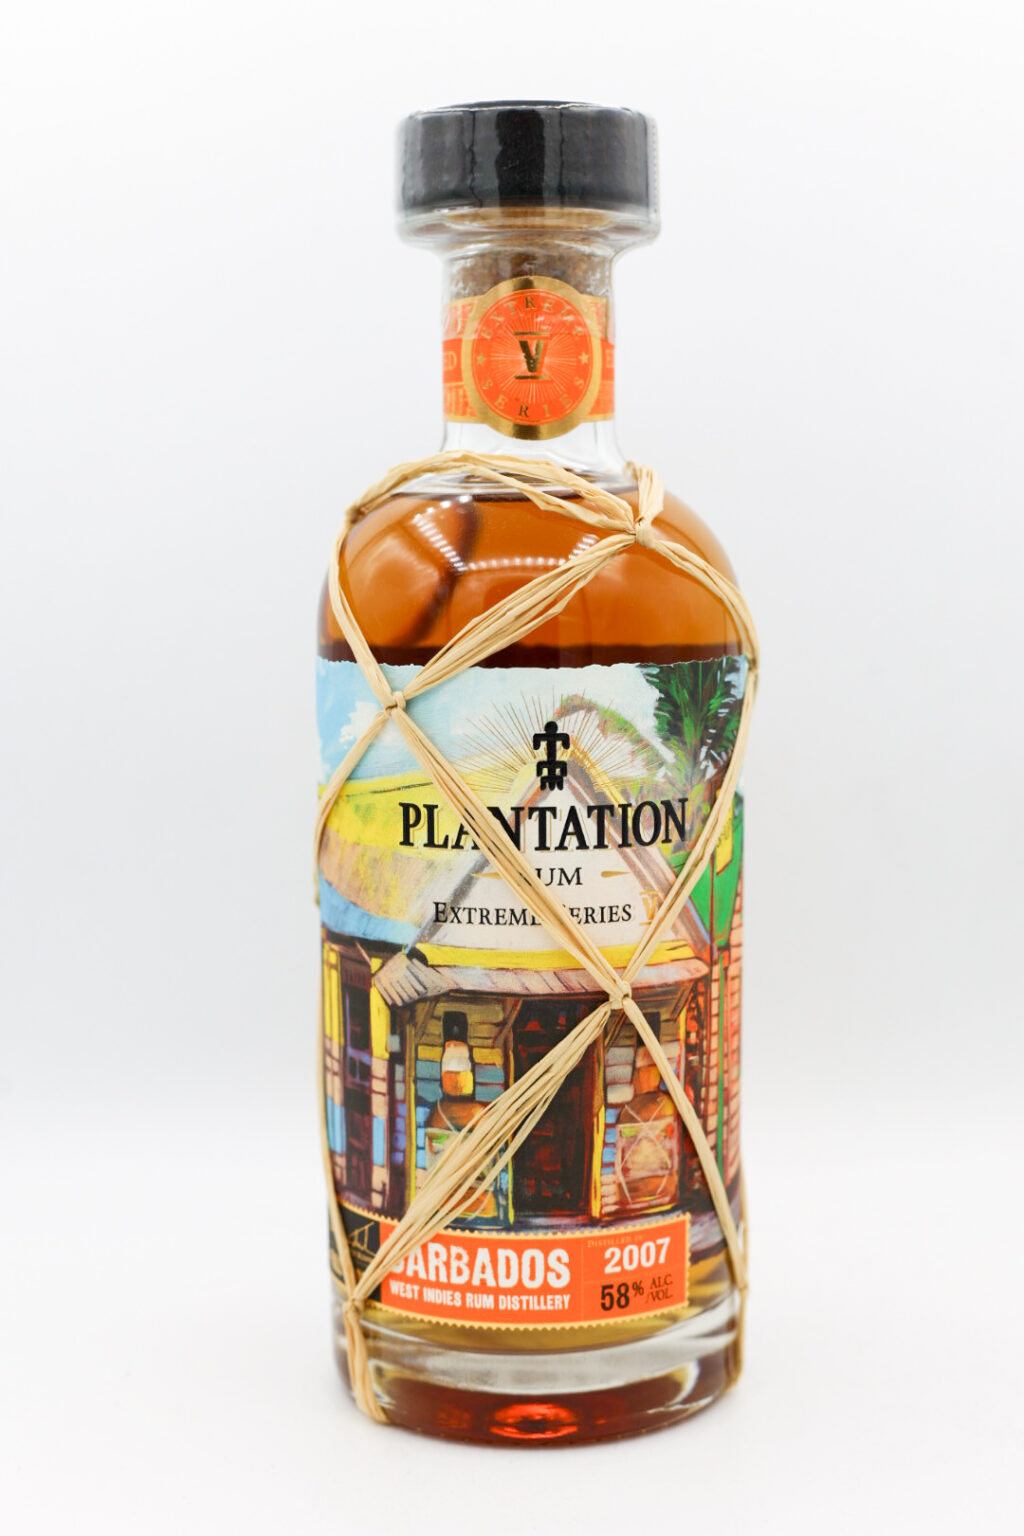 Plantation Rum Barbados 2007 116 proof